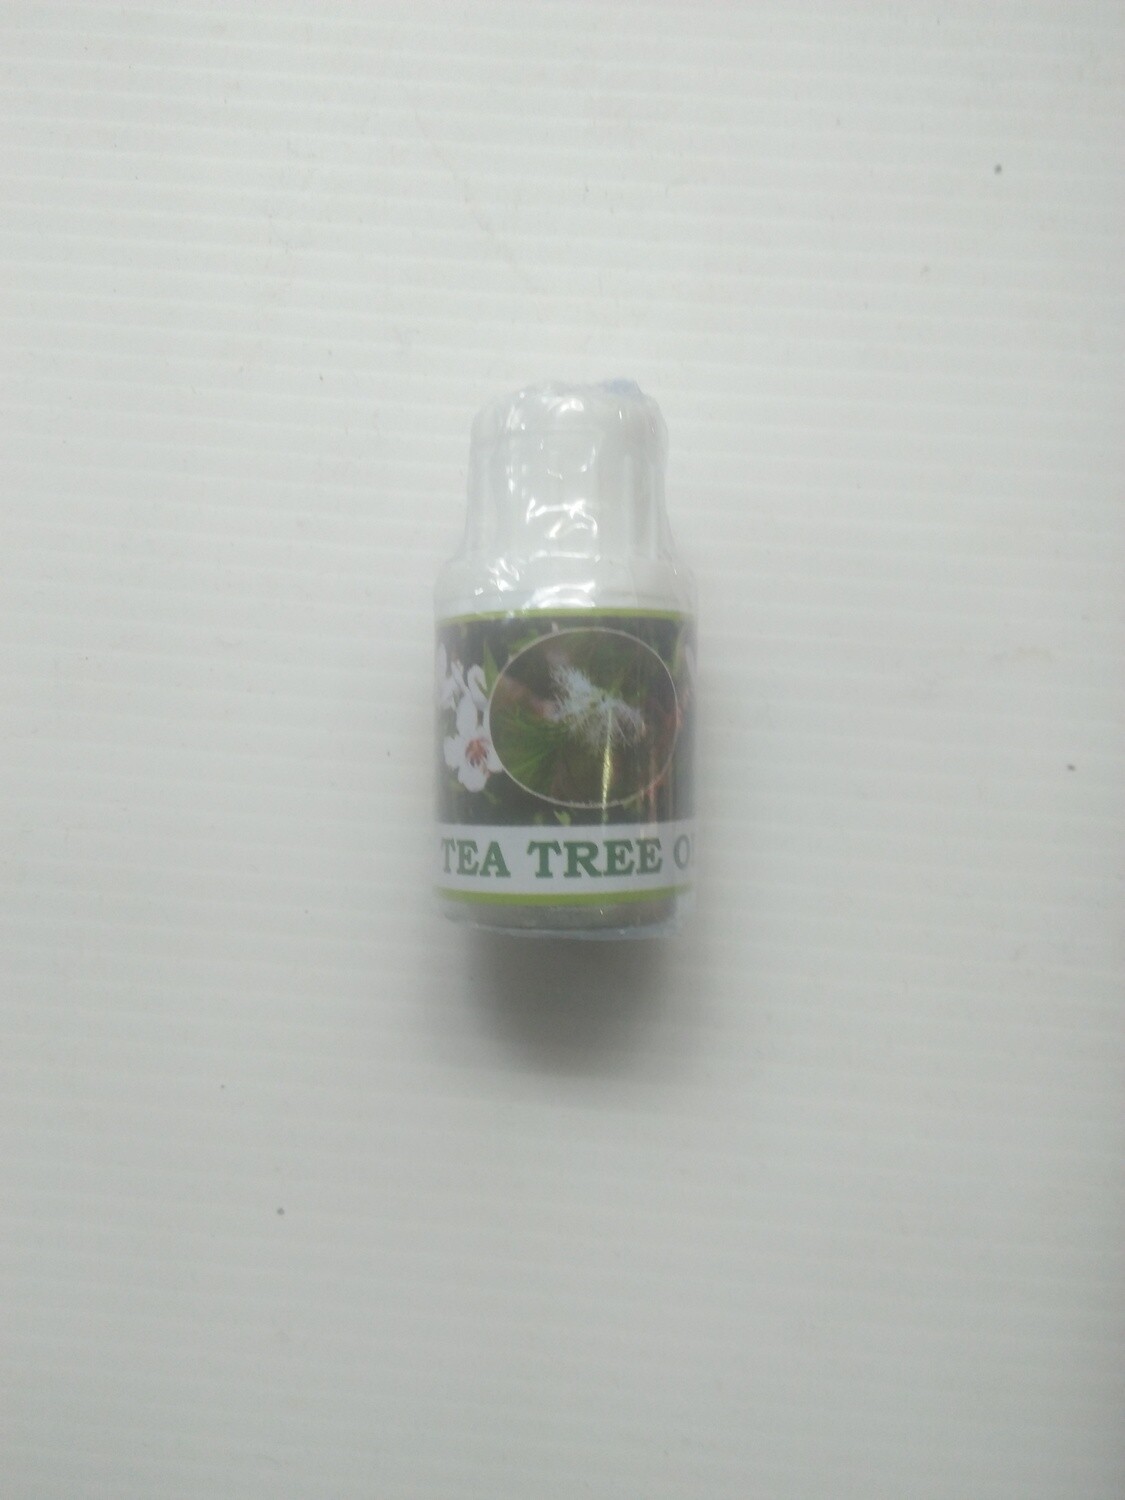 Tea tree oil 25ml